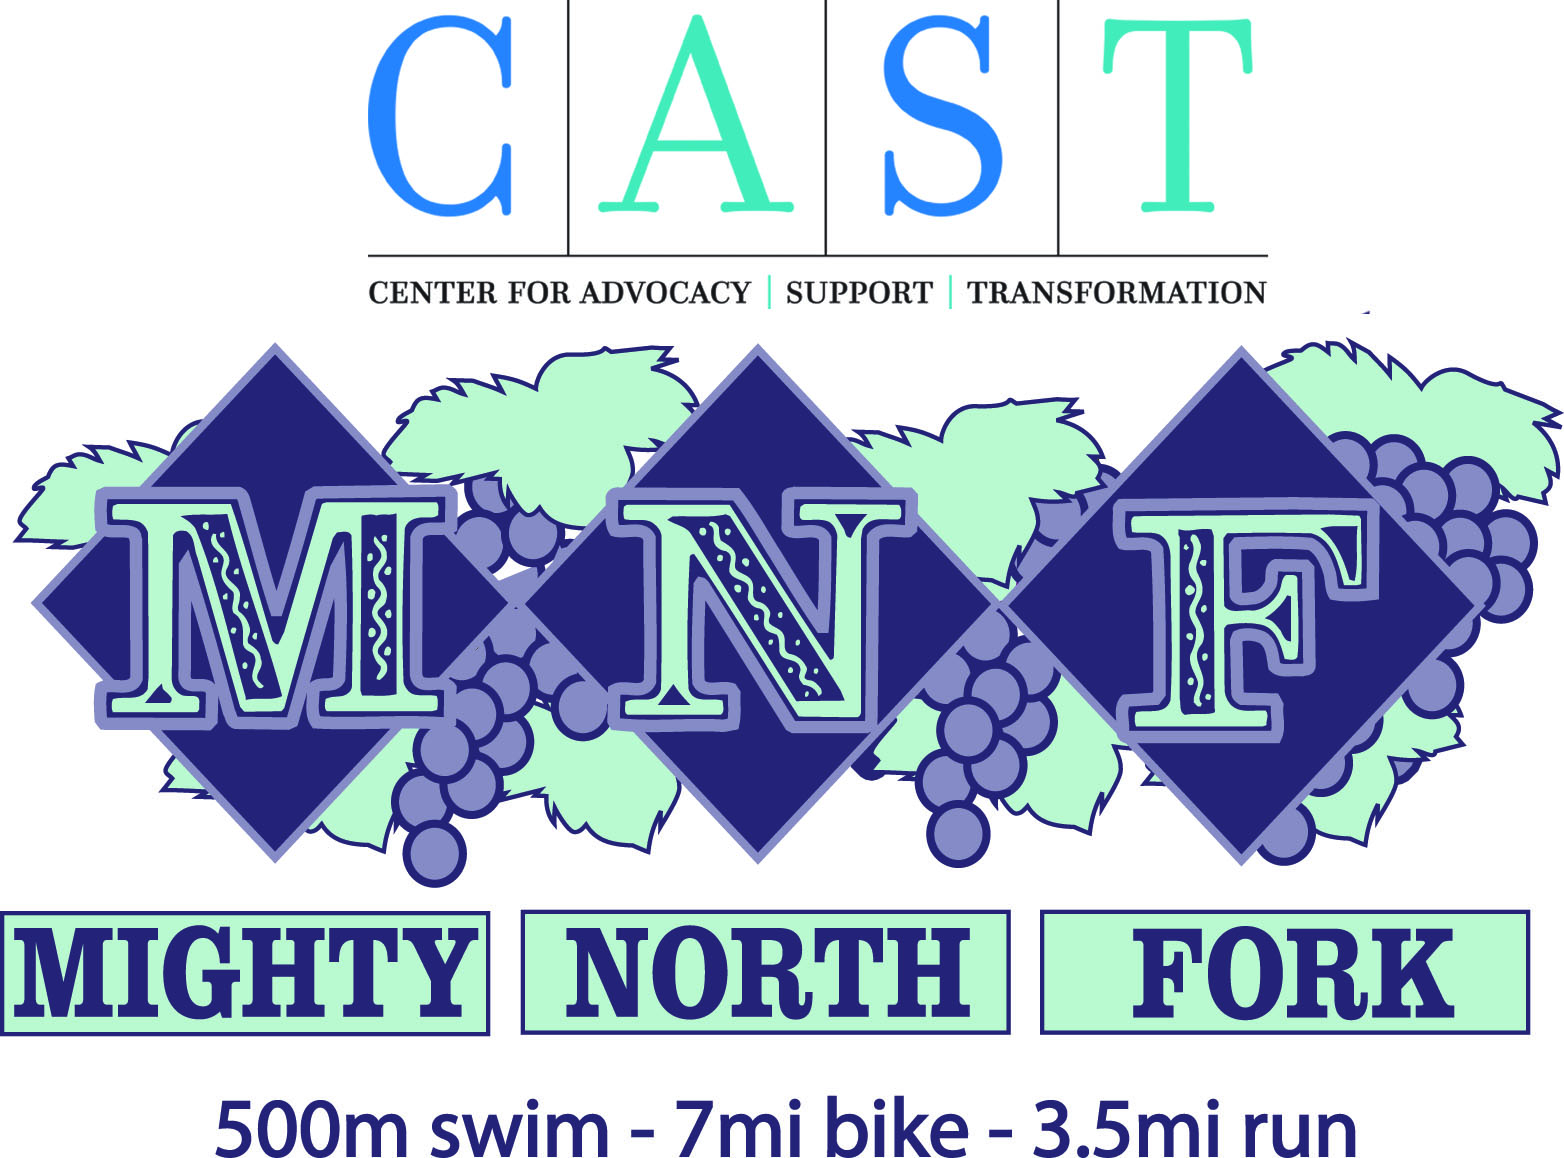 Mighty North Fork Triathlon